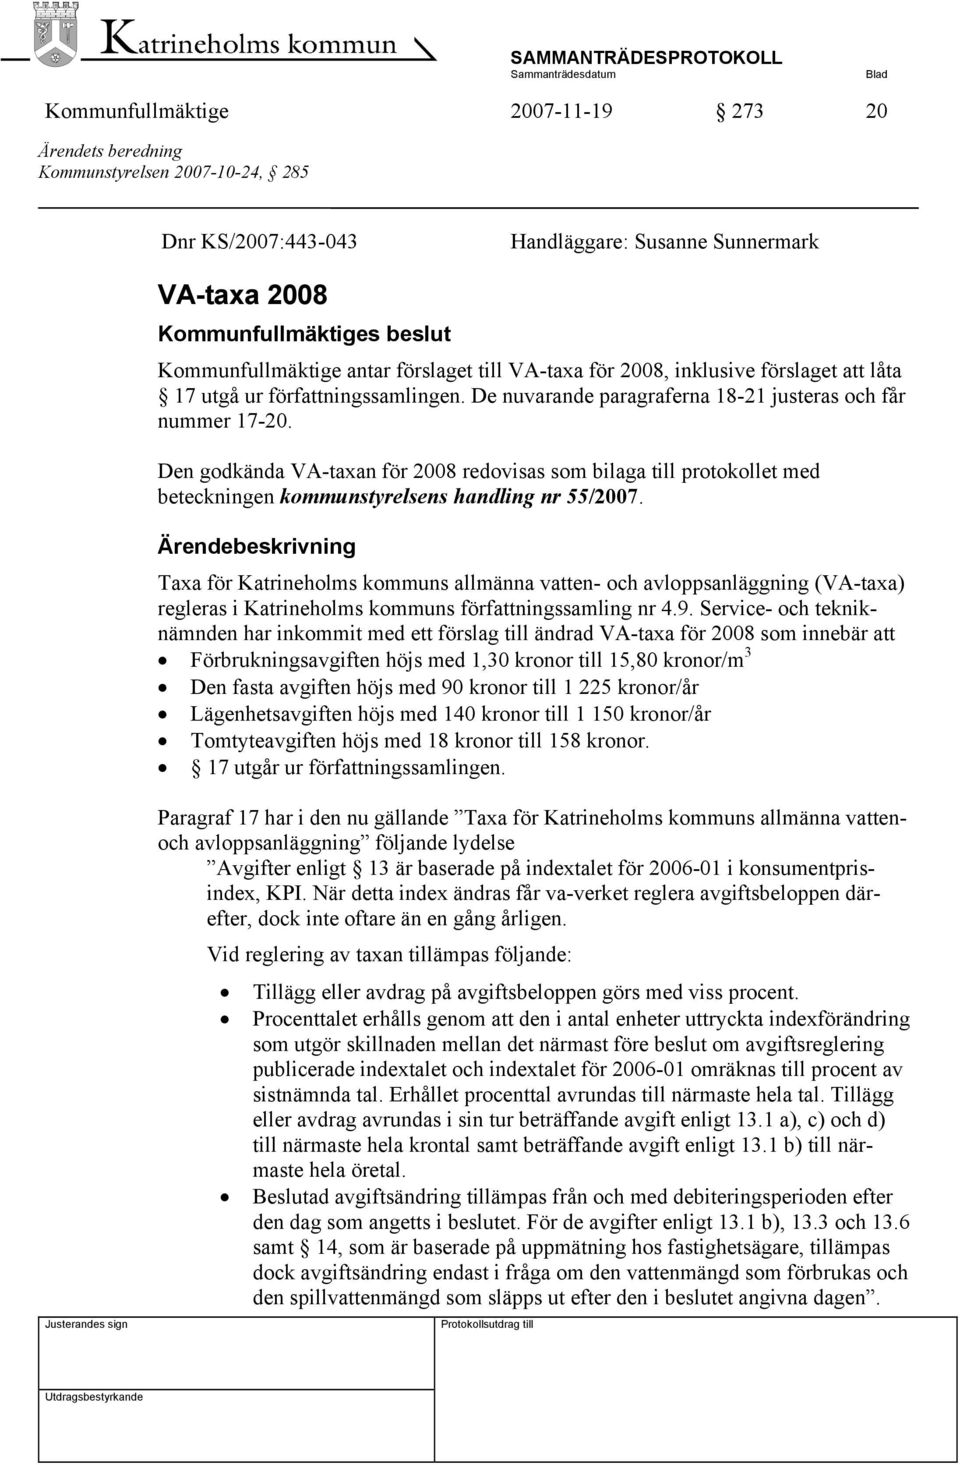 Den godkända VA-taxan för 2008 redovisas som bilaga till protokollet med beteckningen kommunstyrelsens handling nr 55/2007.